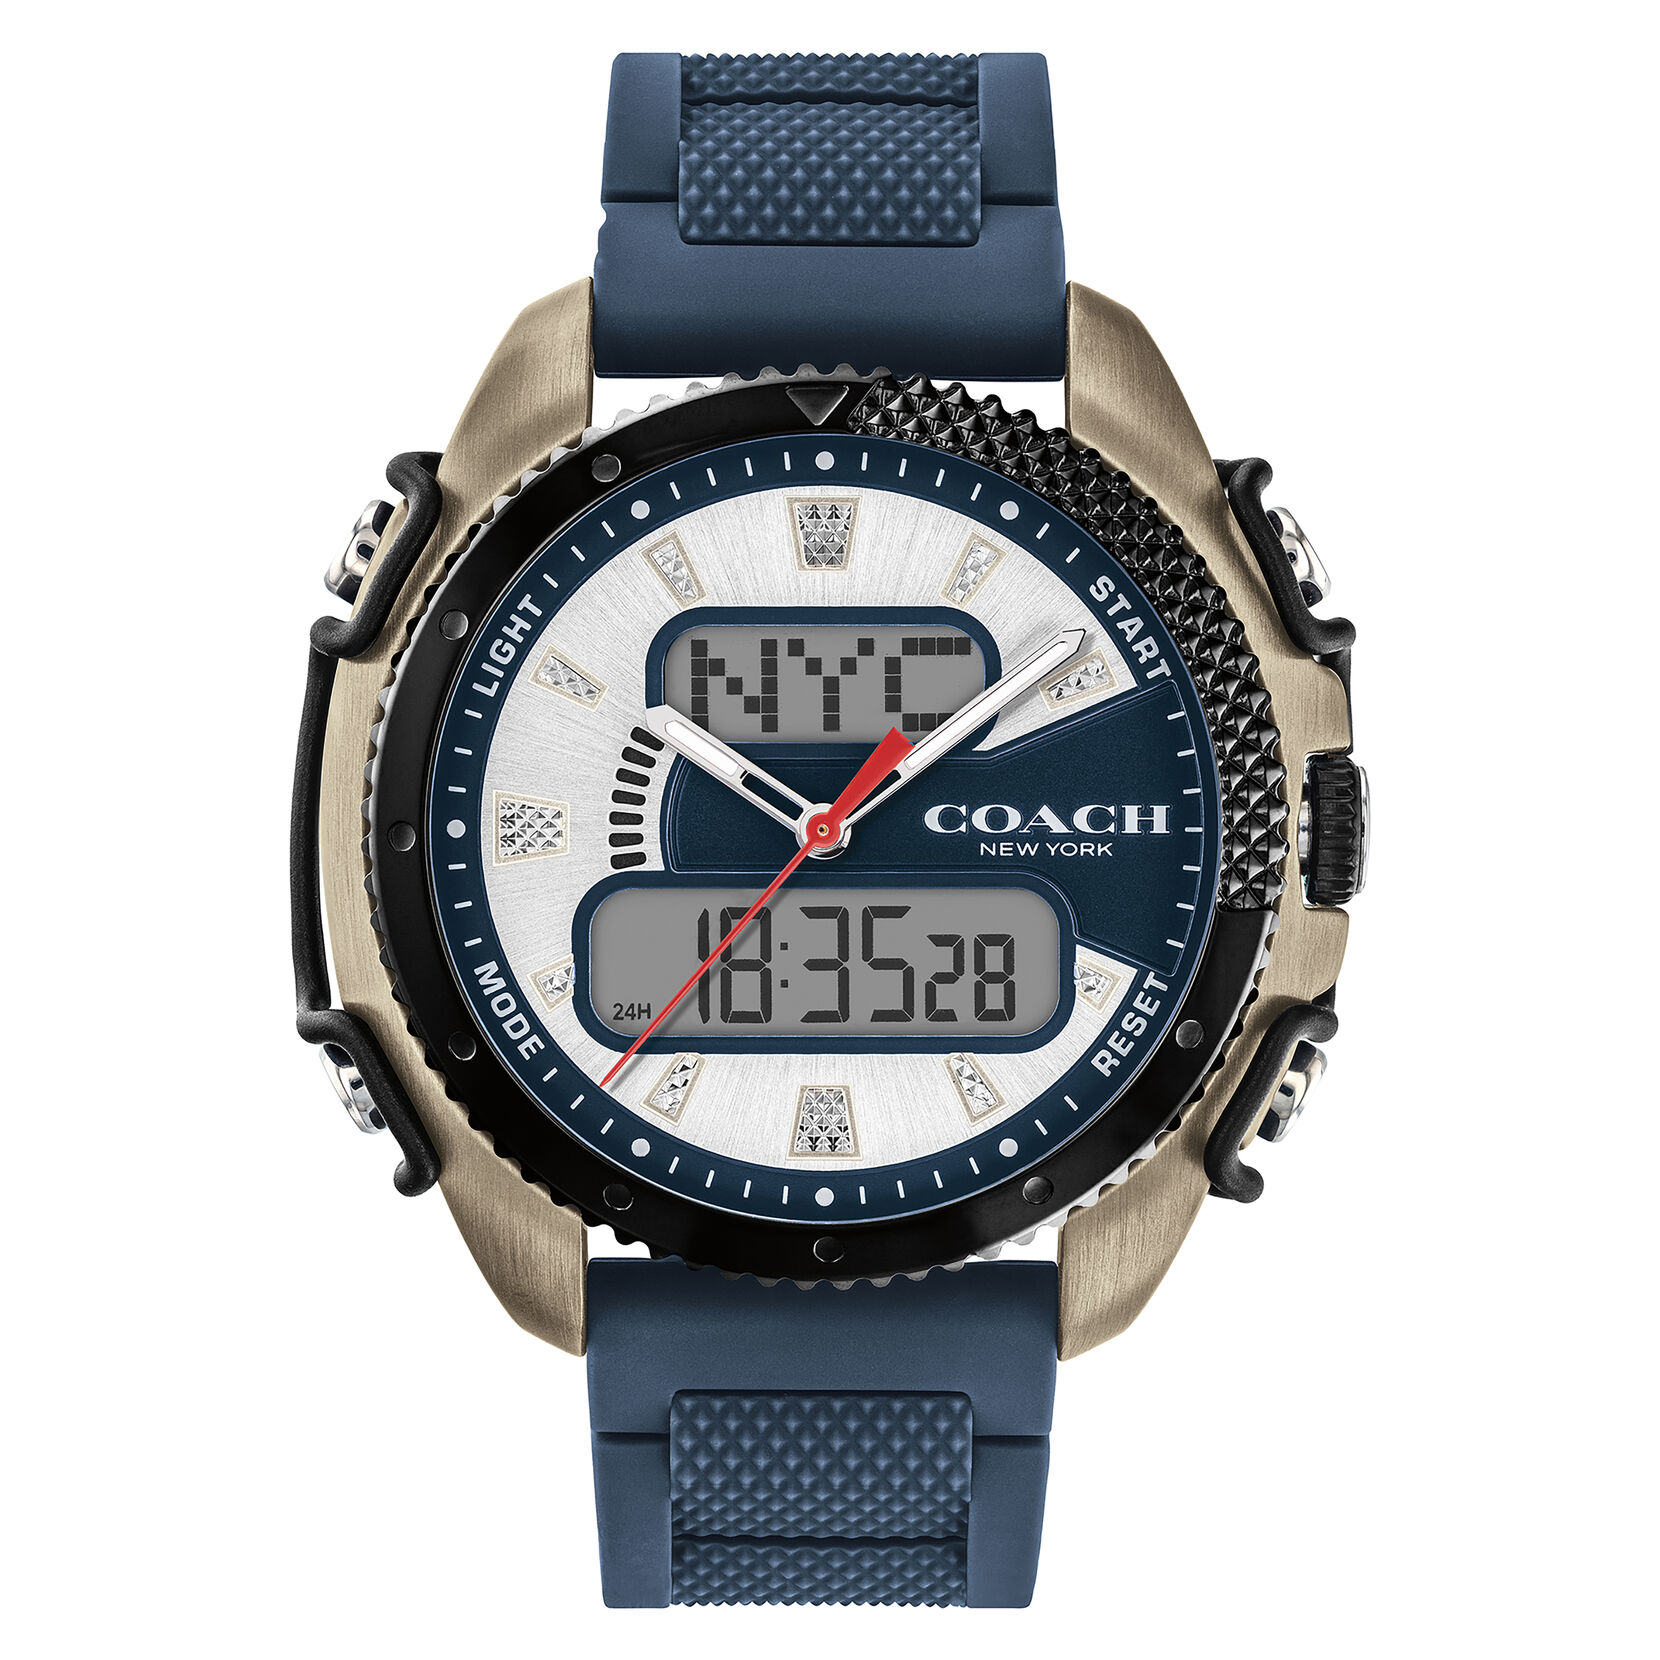 C001 Digital Men's Watch, 47mm